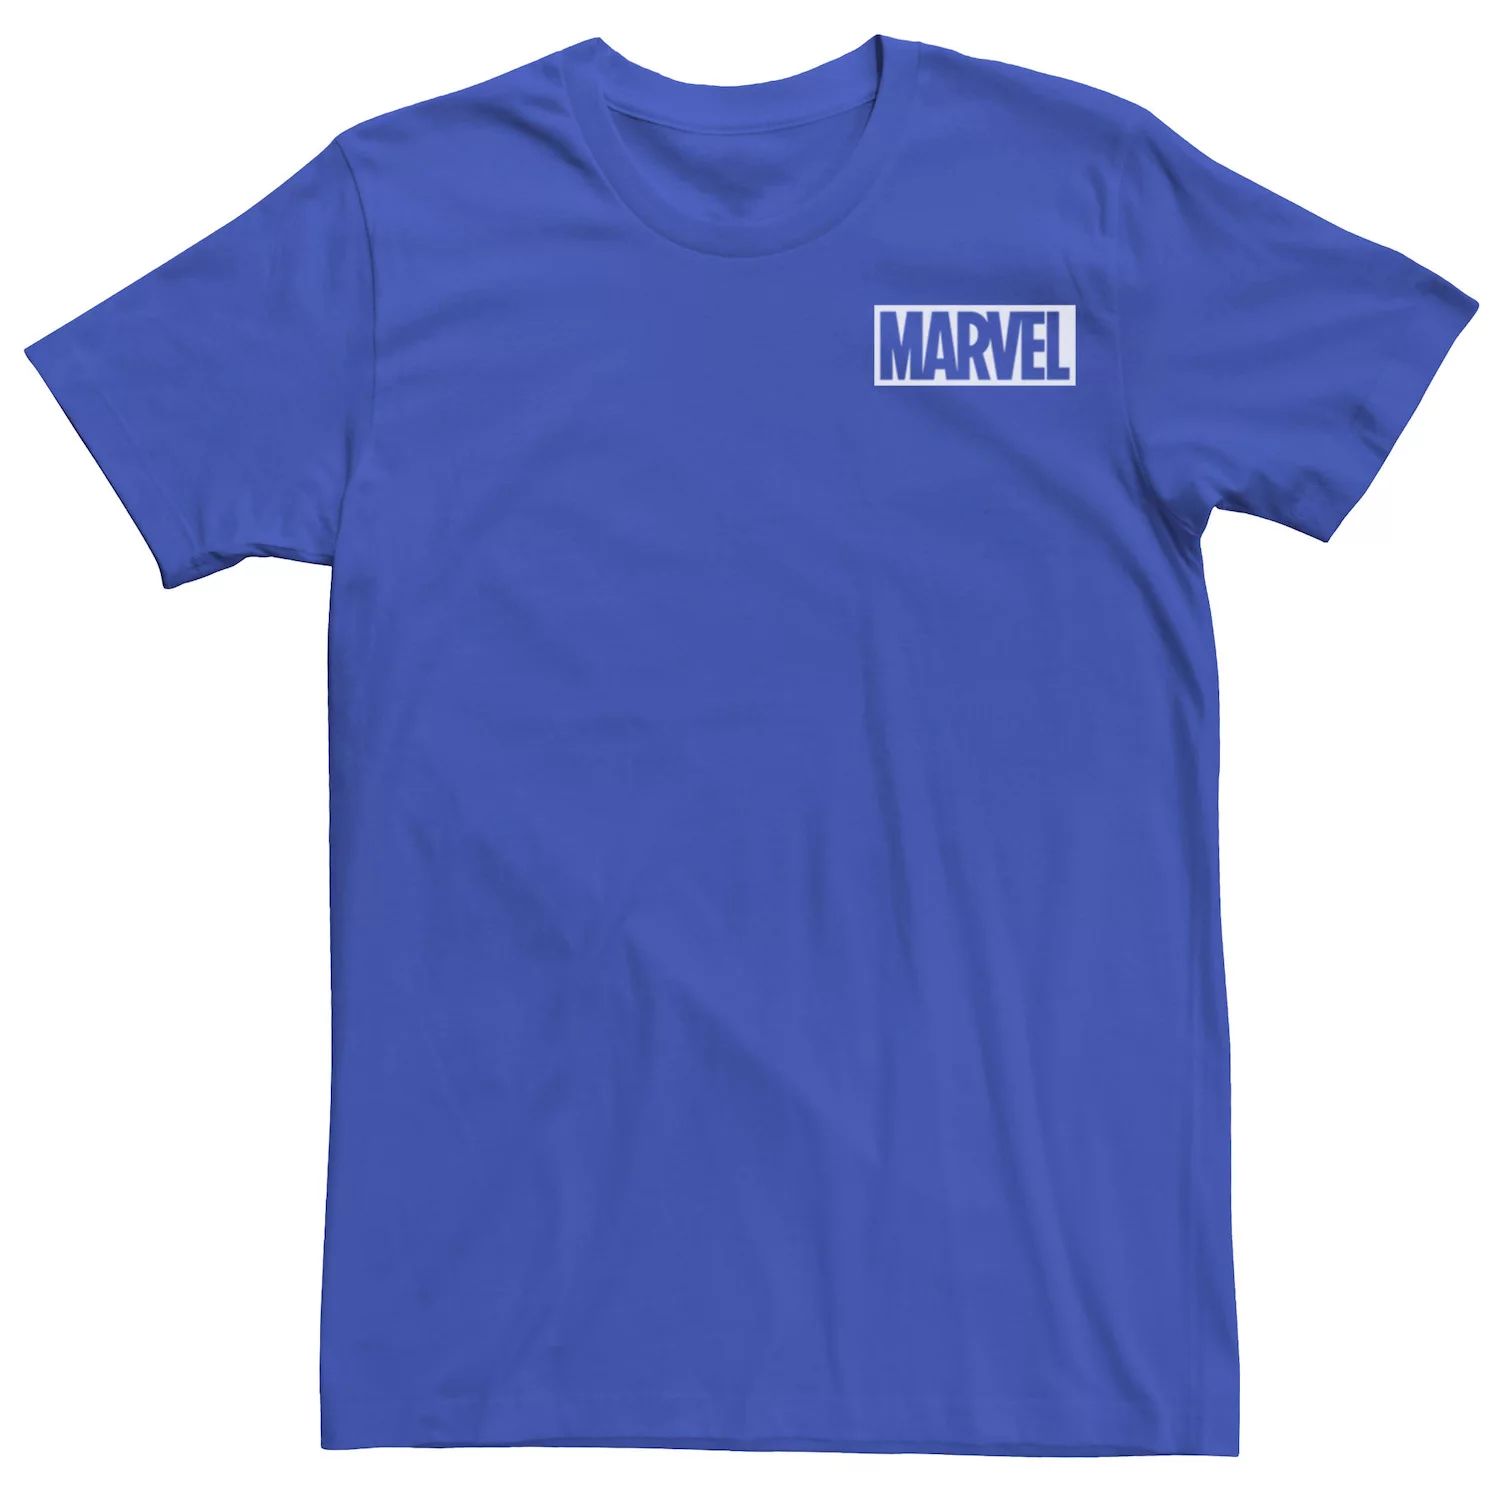 Мужская простая белая футболка с логотипом комиксов Marvel